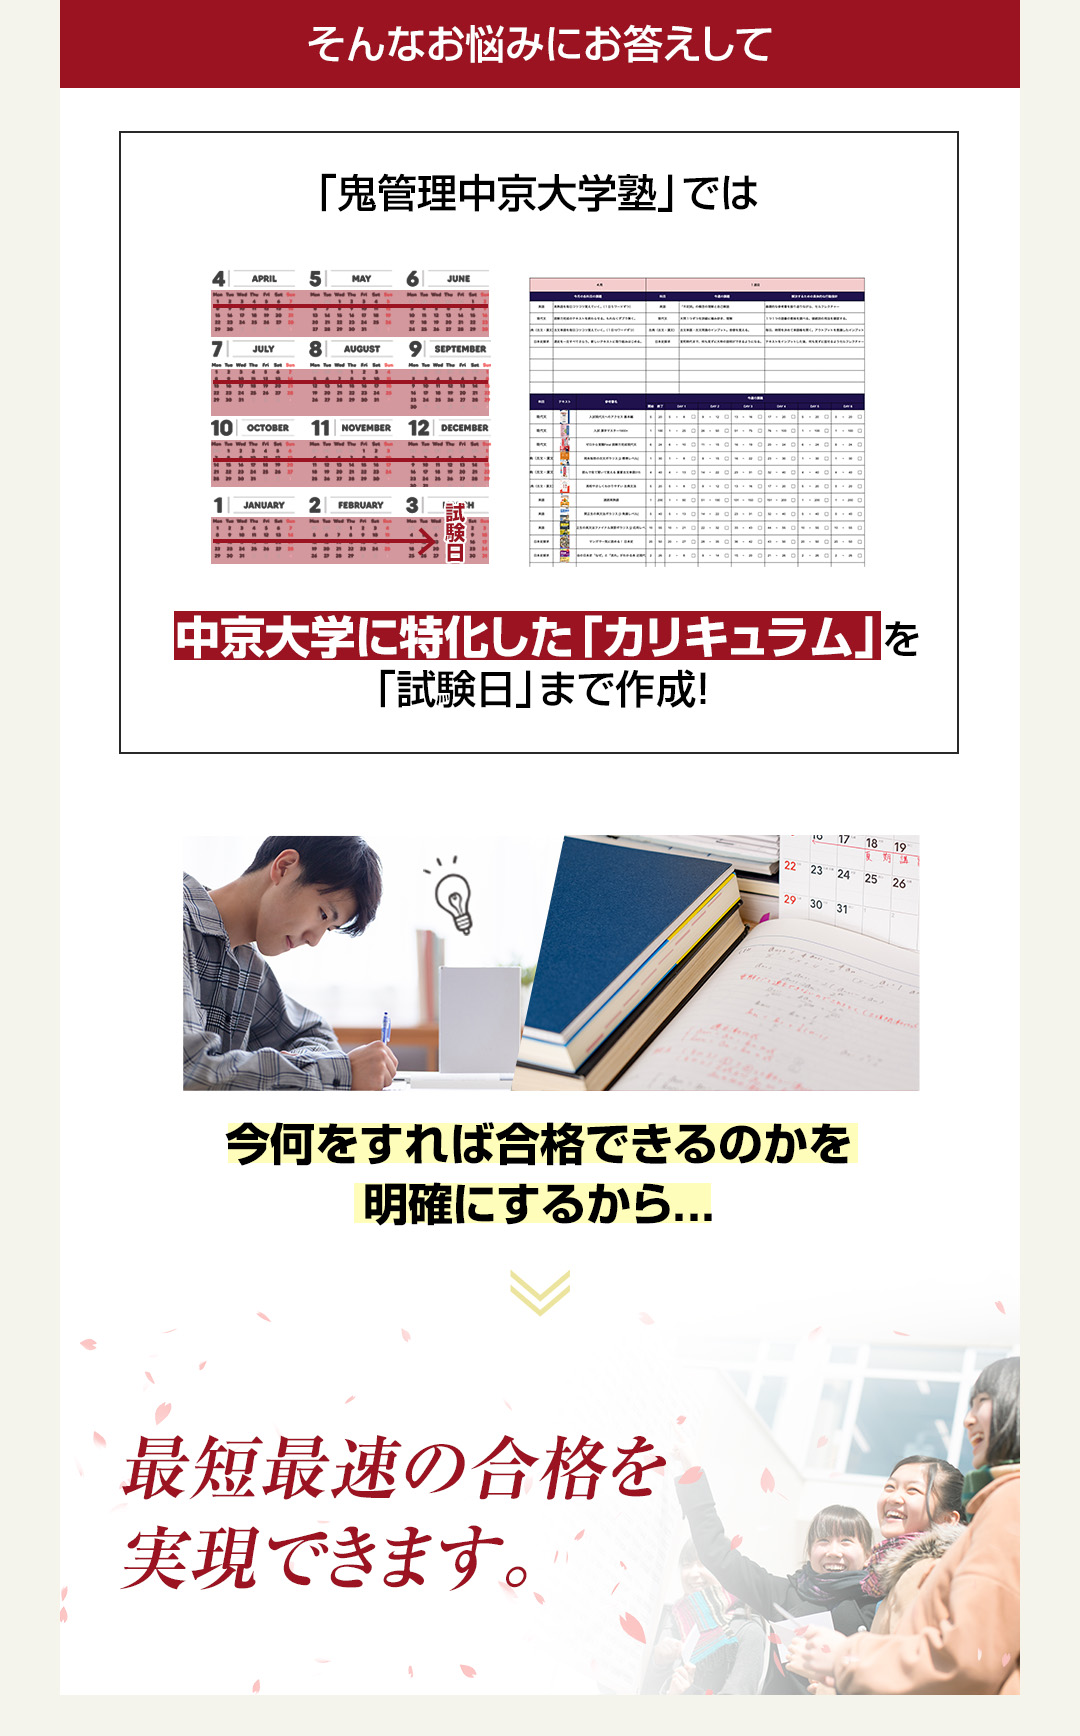 「鬼管理中京大学塾」では中京大学校に特化した「カリキュラム」を「試験日」まで作成